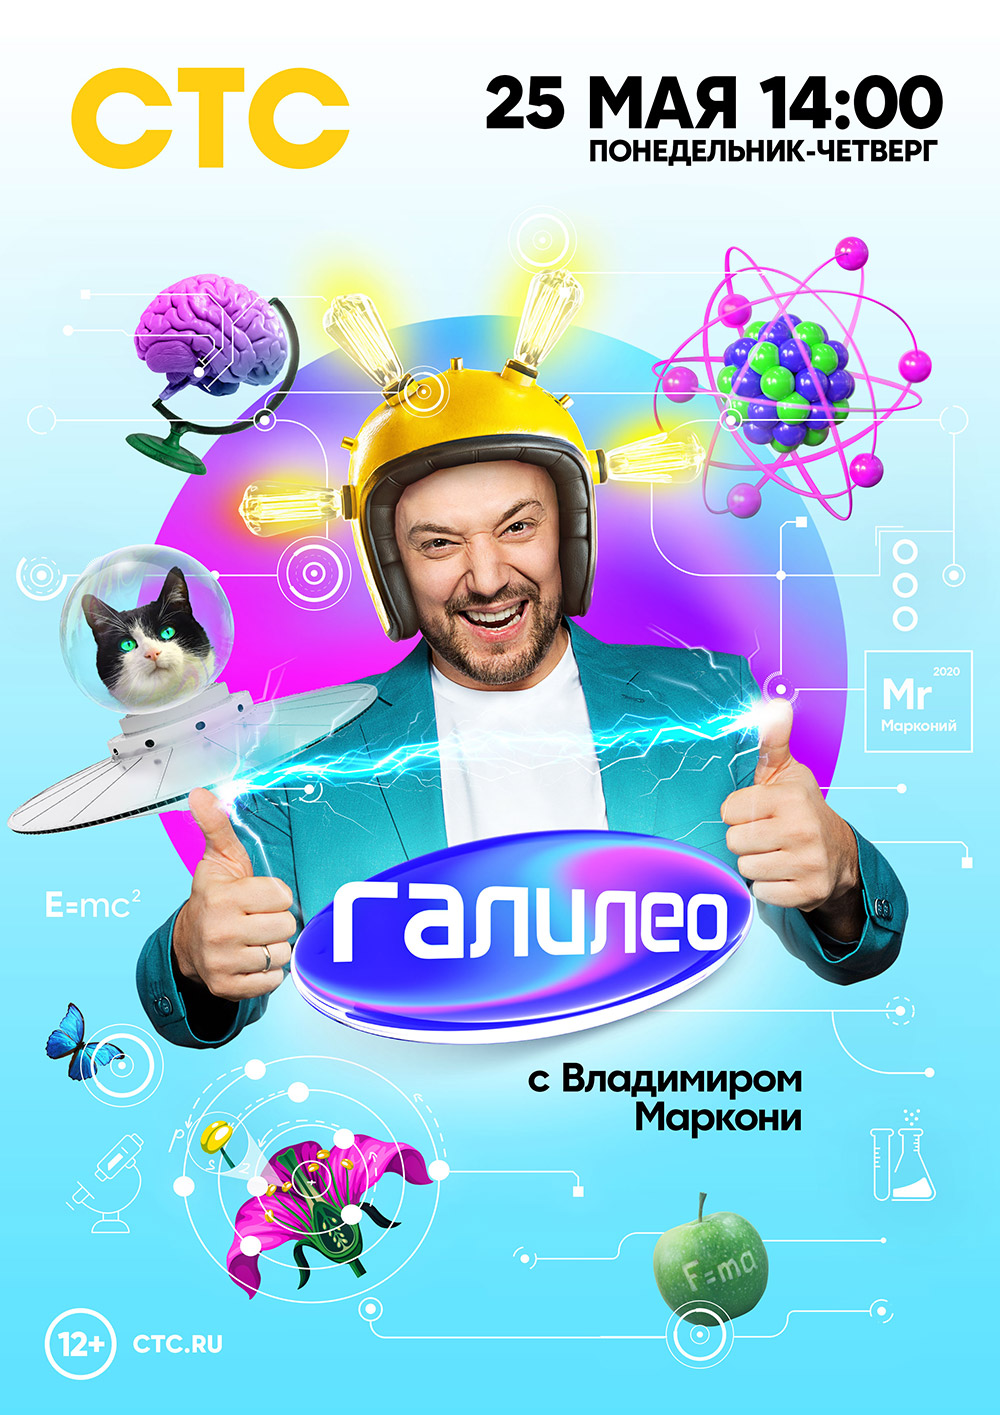 С 14:00 25 мая Галилео < pran>, на том же канале, в ответ на поддержку Министерства федерального образования России и просьбы зрителей.